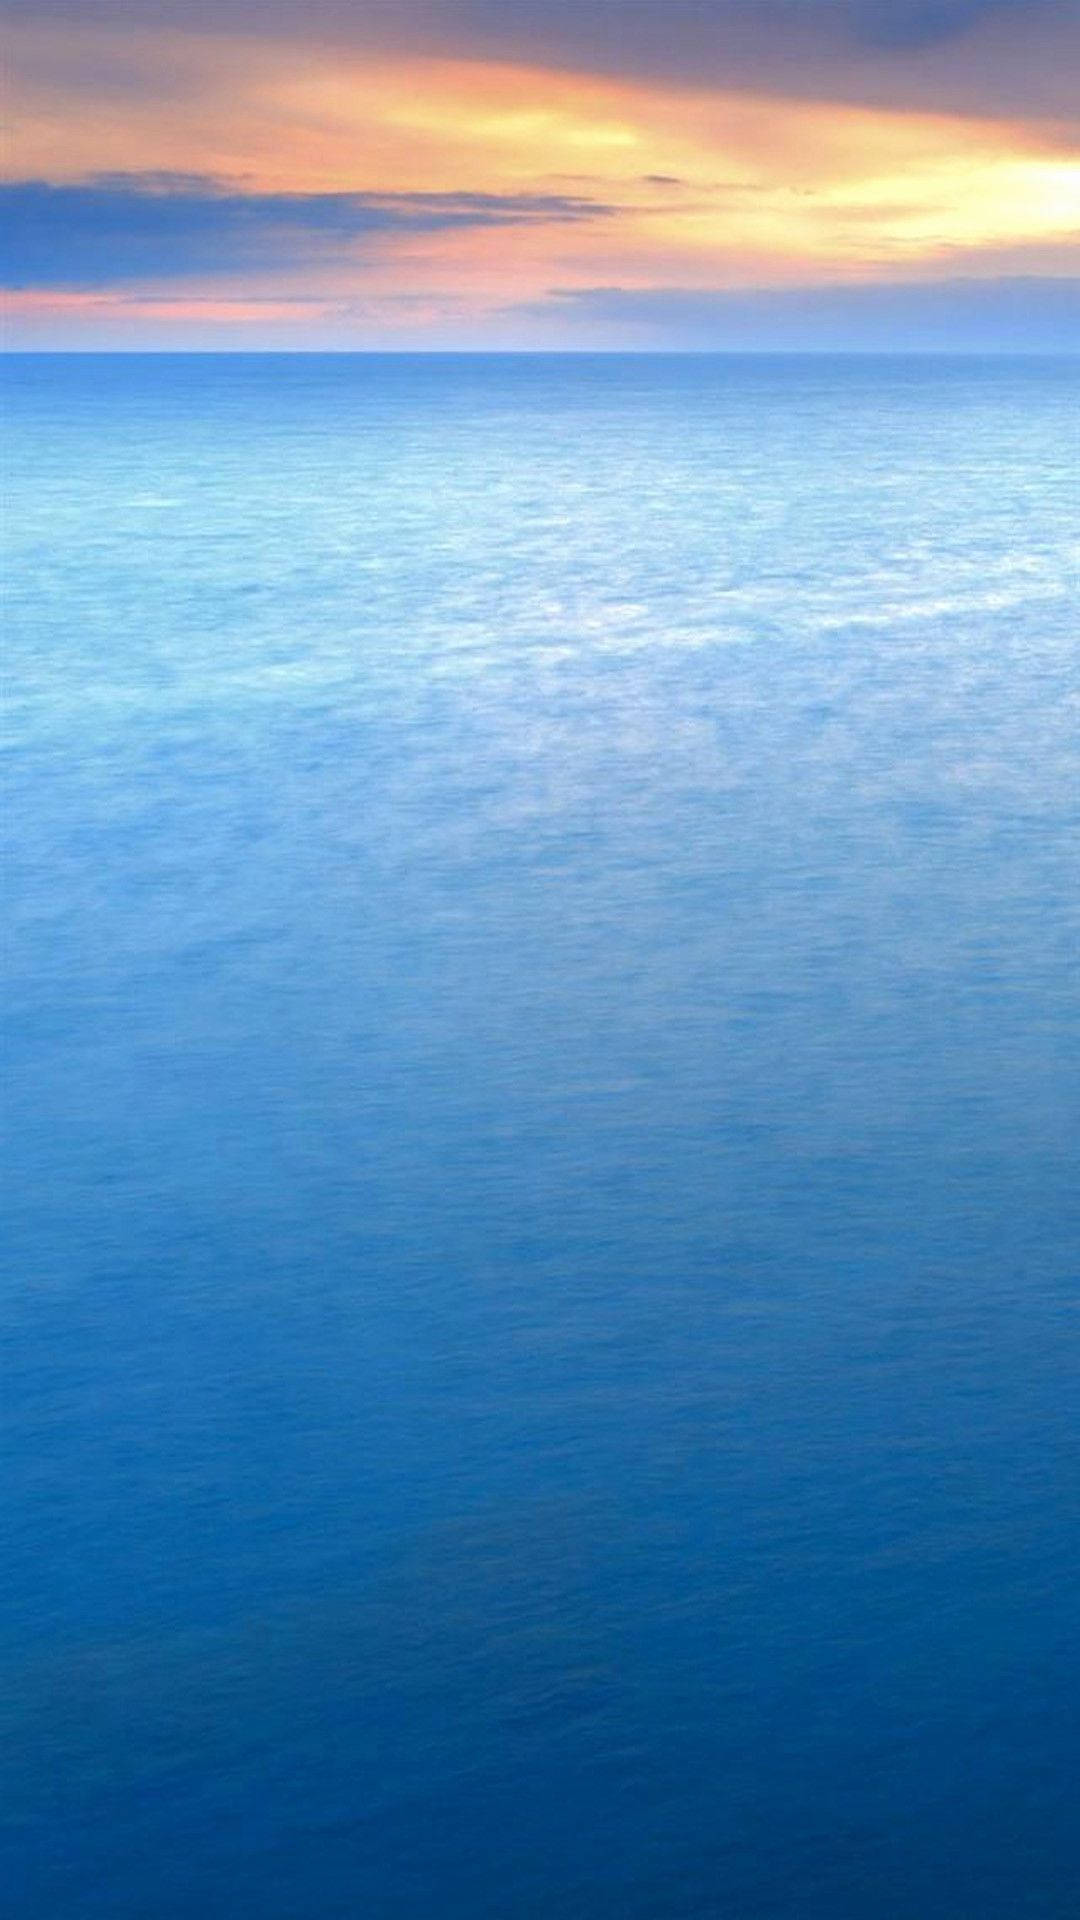 Blue Ocean Home Screen Wallpaper